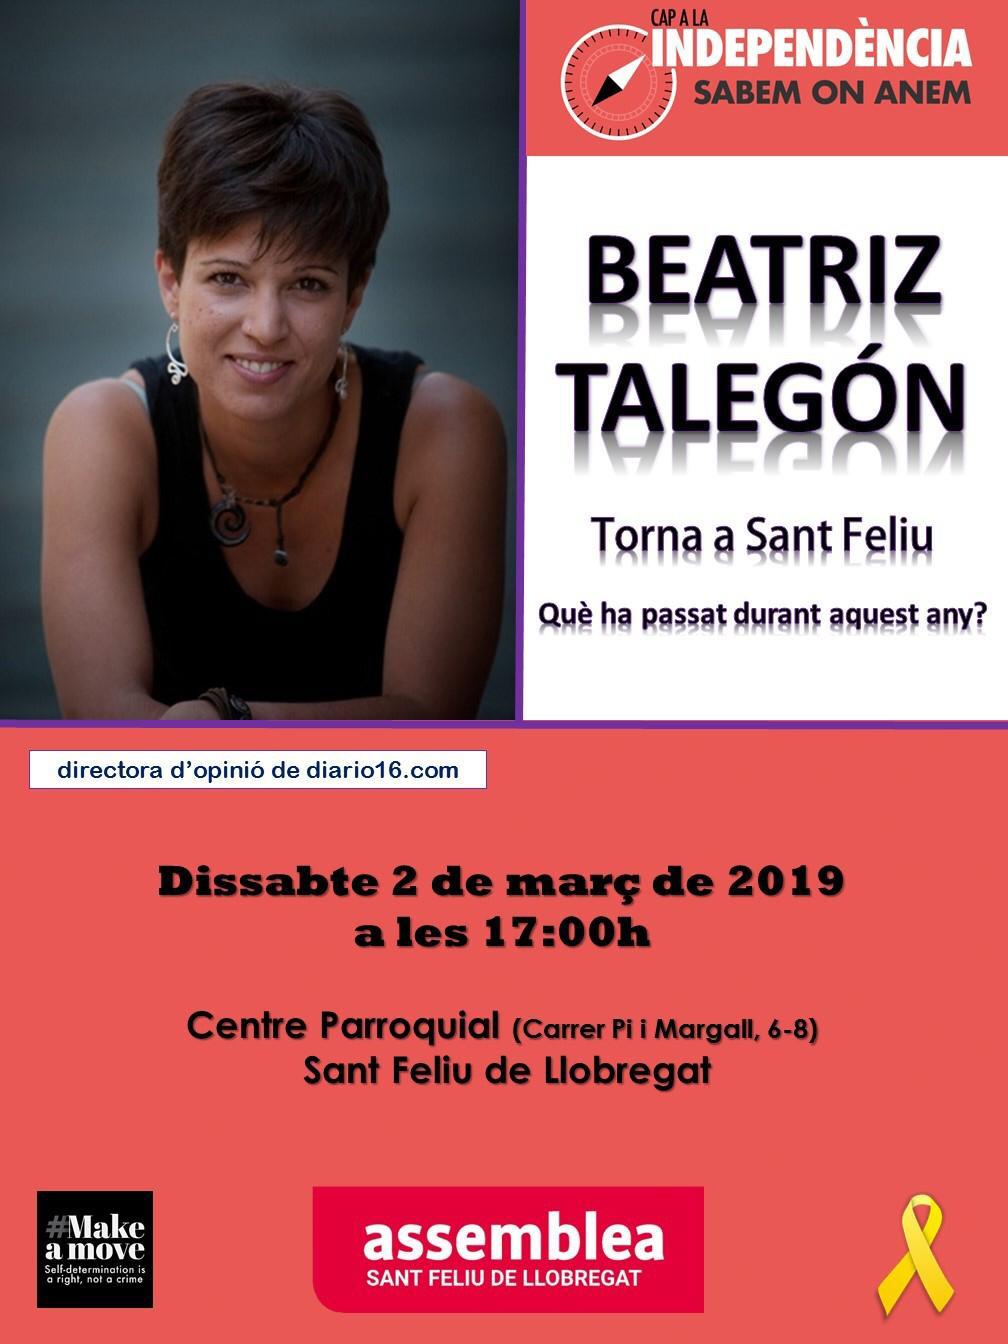 Beatriz Talegón torna a Sant Feliu. Què ha passat durant aquest any?